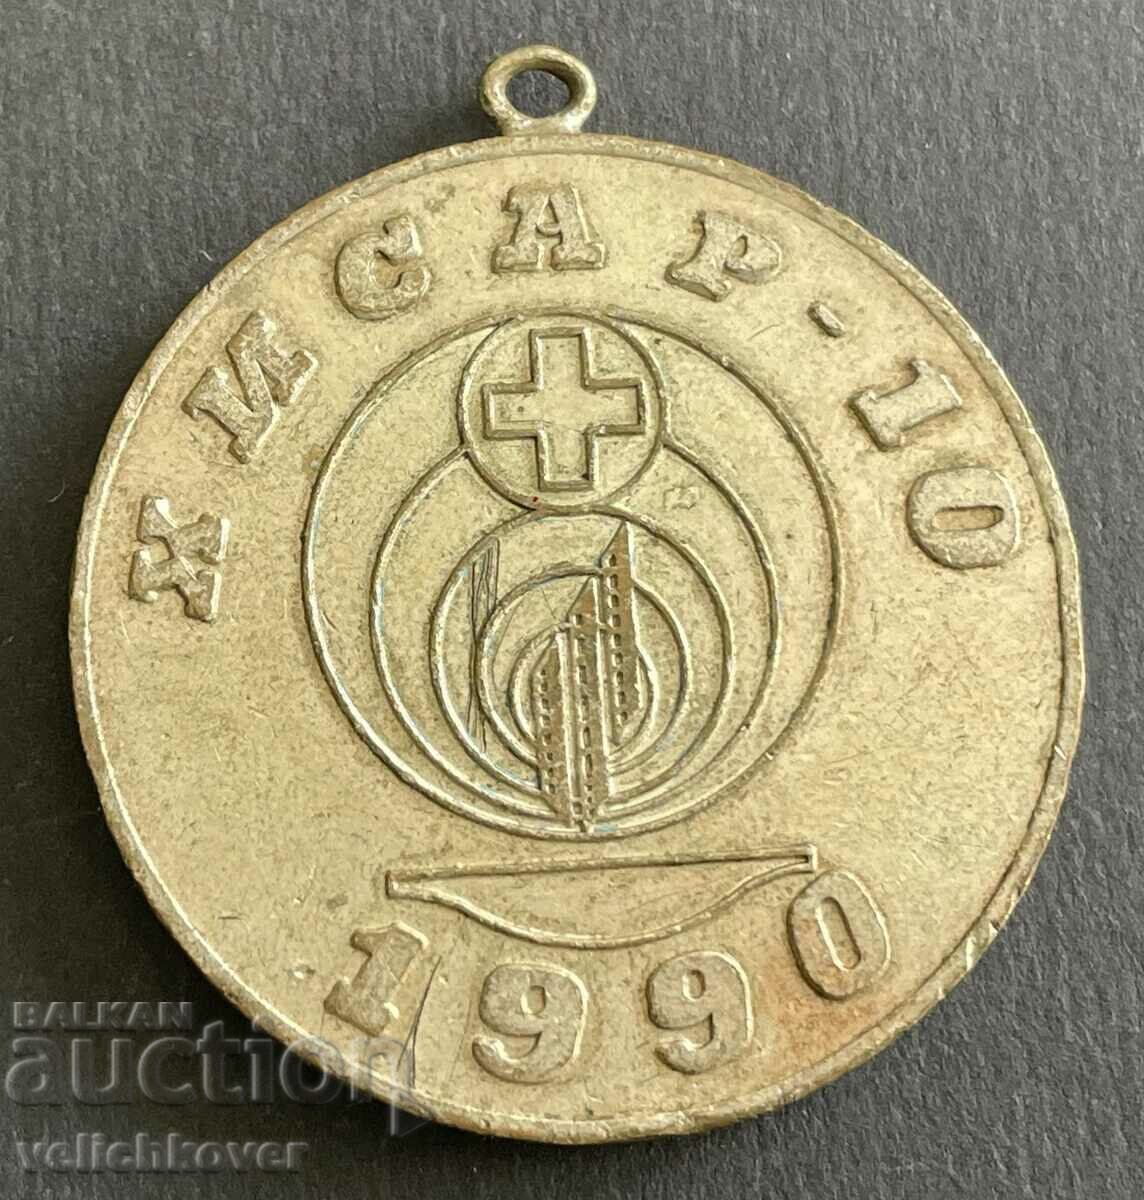 37246 България жетон герб Хисаря БЧК 1990г. Червен кръст